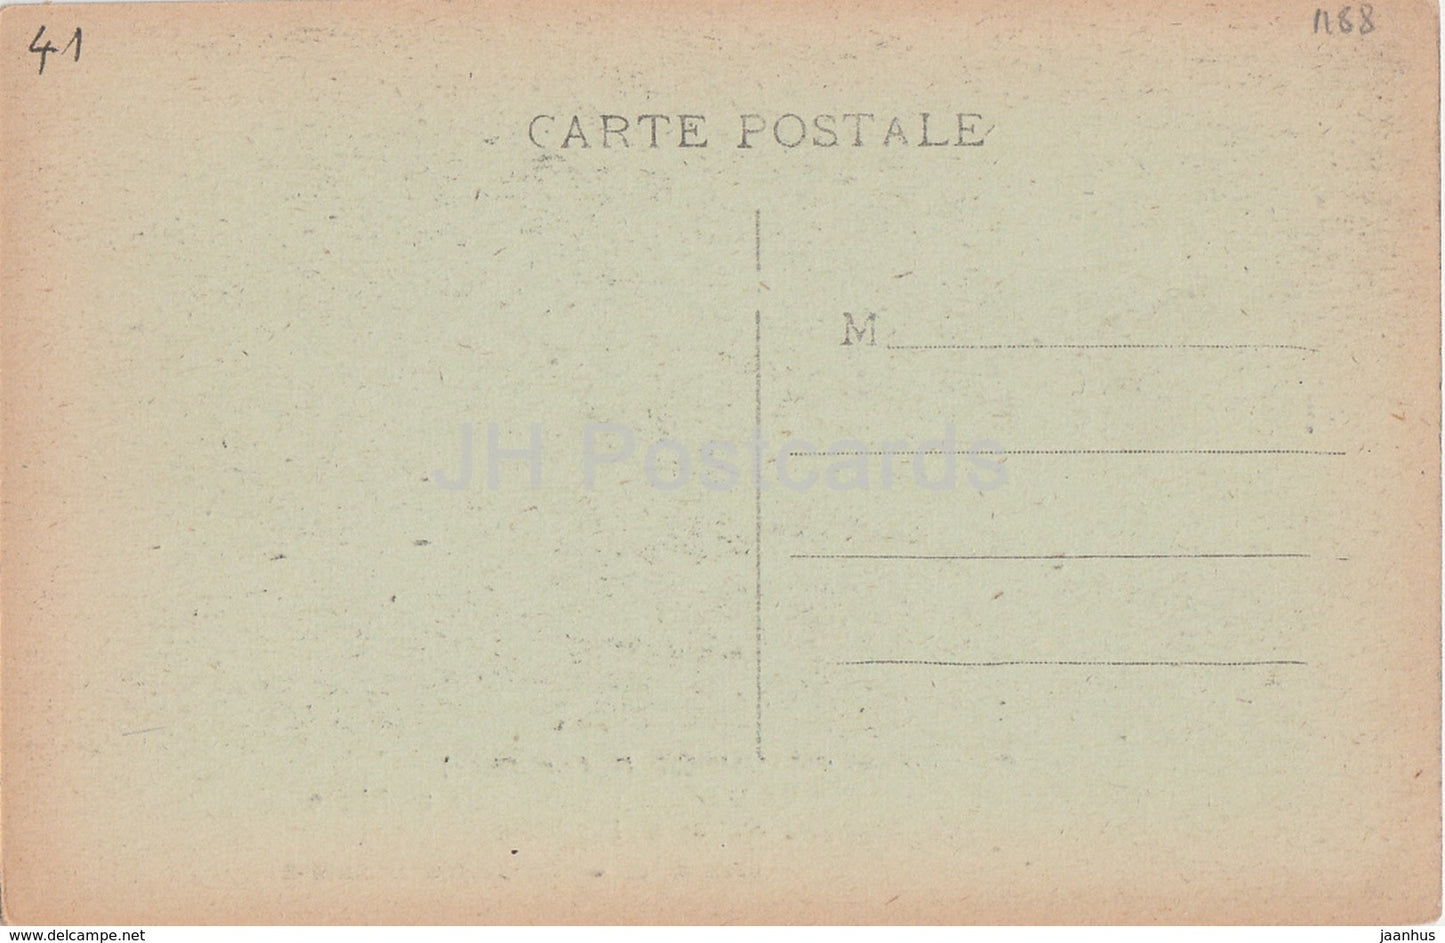 Château de Chaumont - Chambre de Catherine de Médicis - Tapisserie gothique - château - carte postale ancienne - France - inutilisé